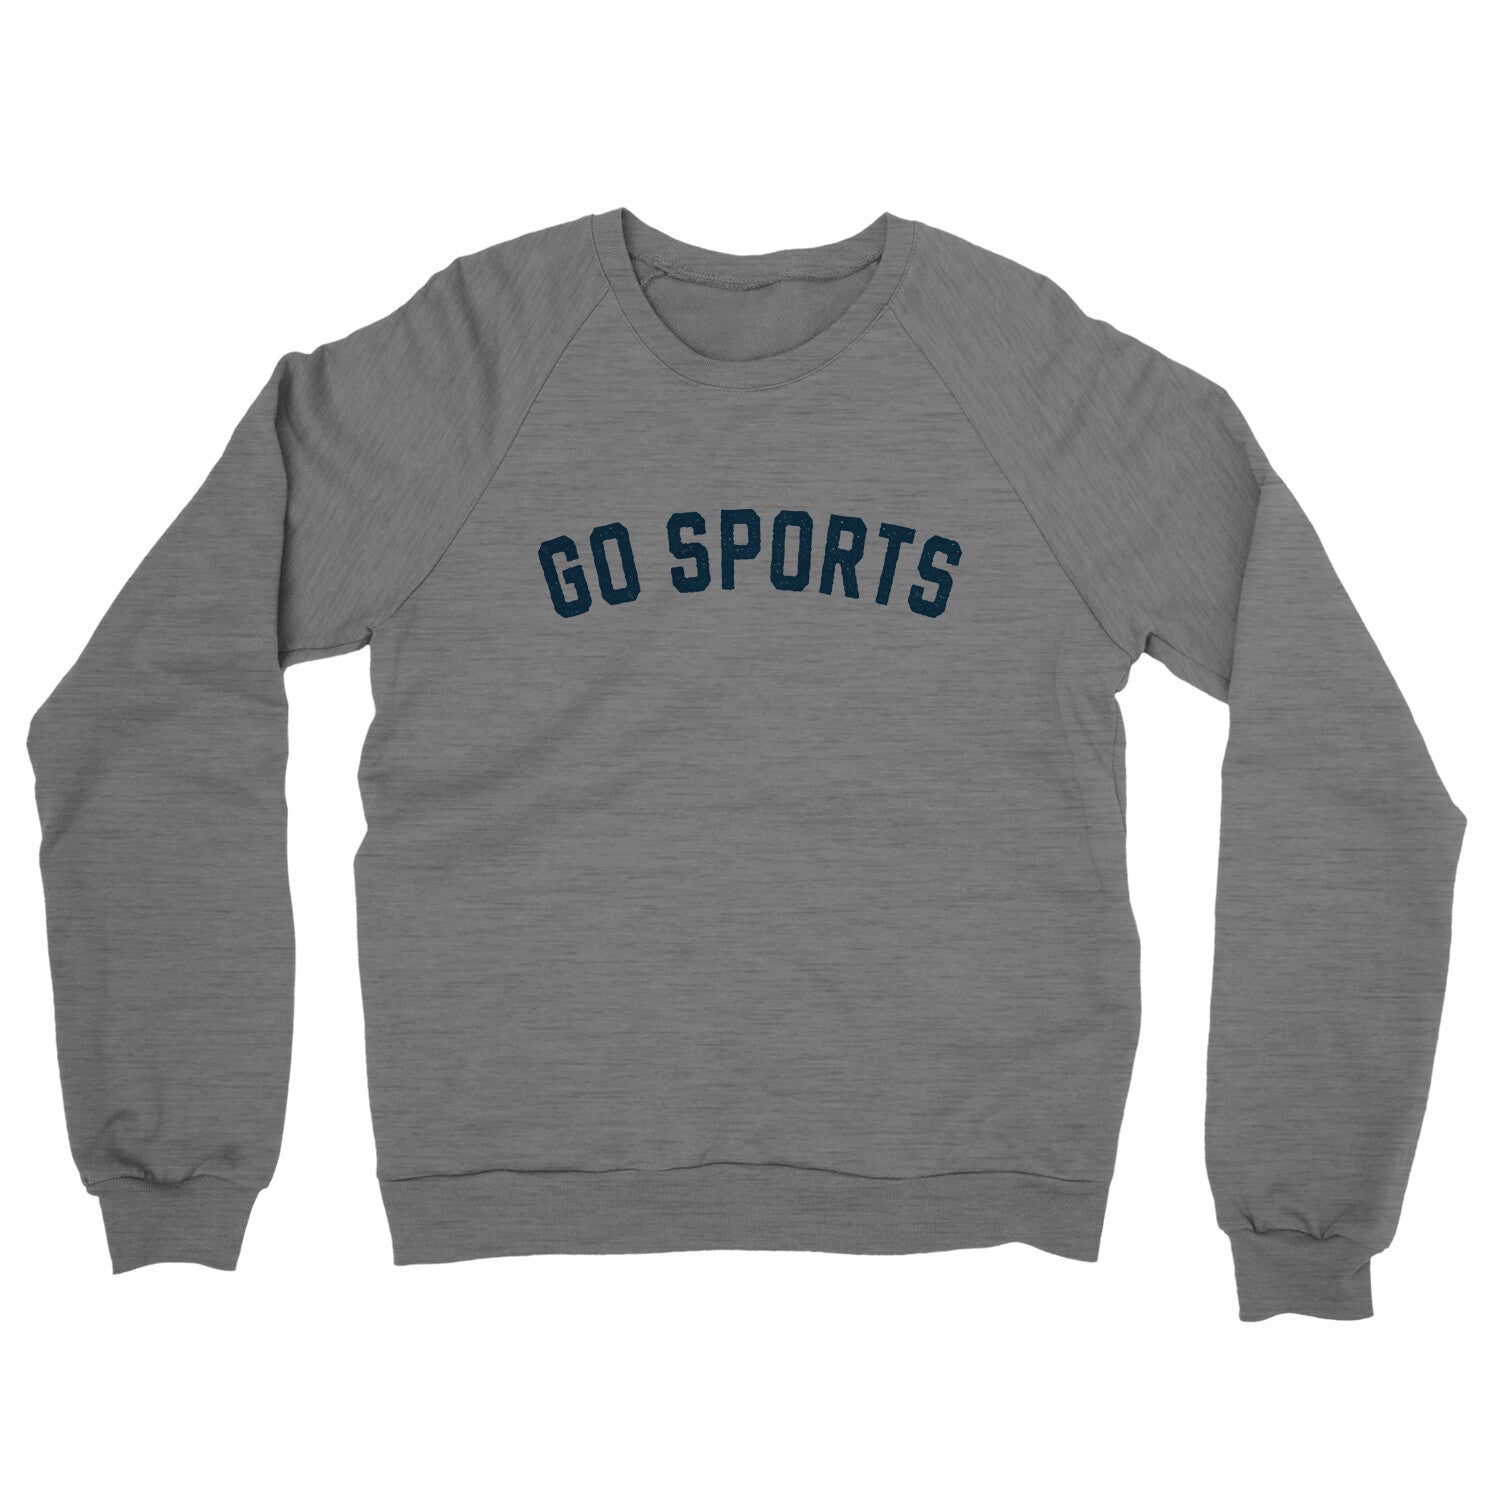 Go Sports in Graphite Heather Color